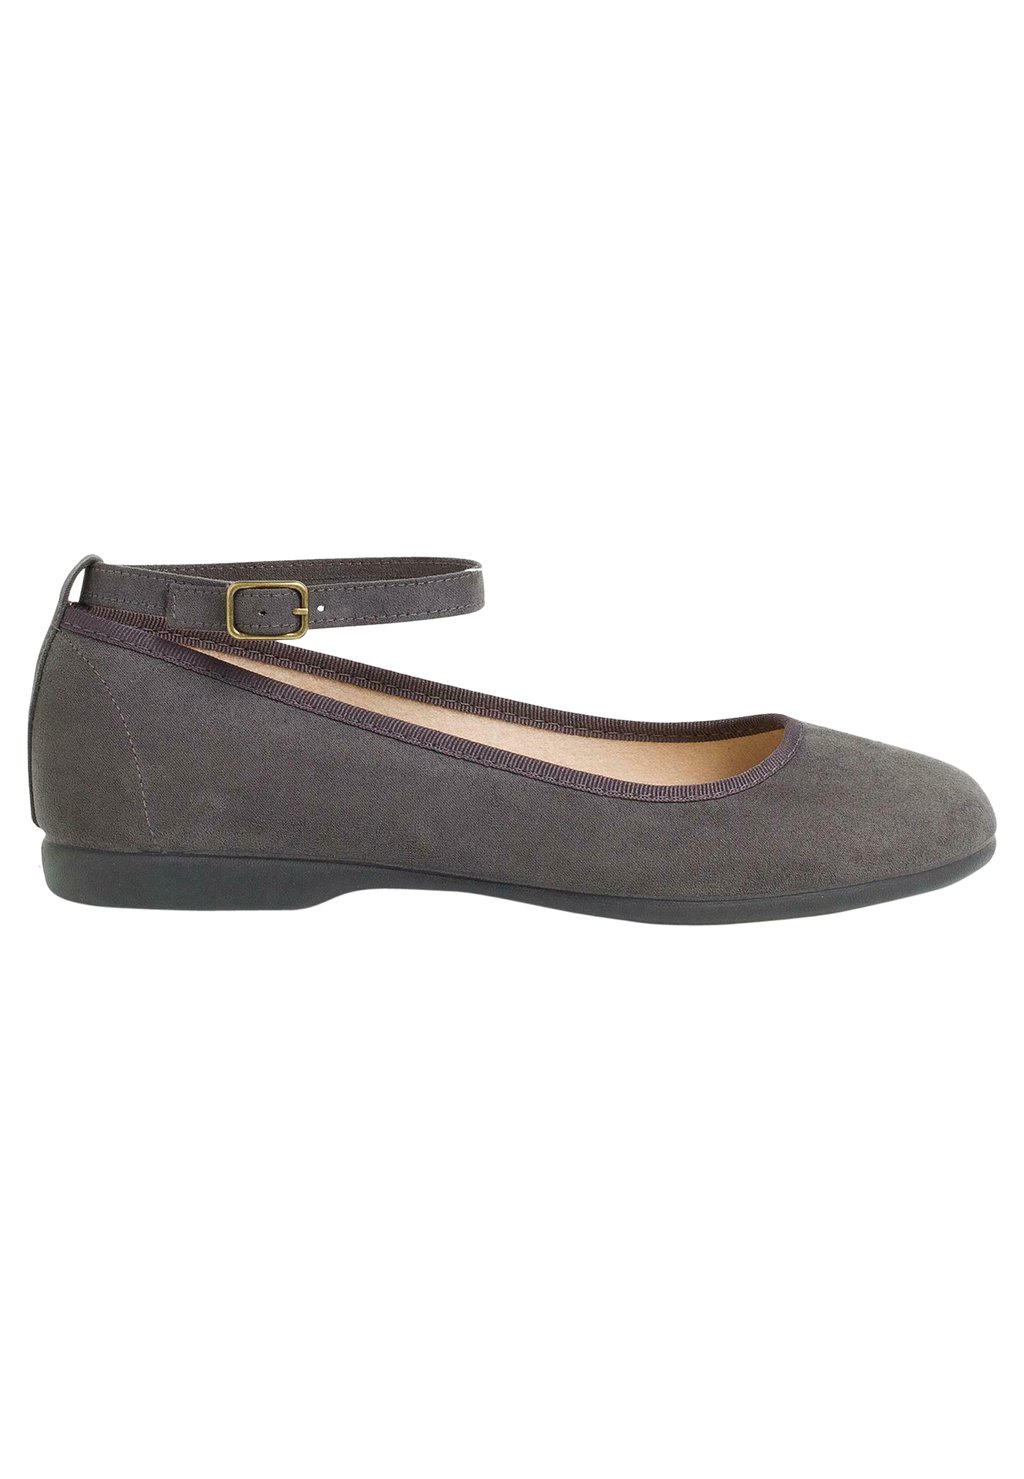 Балетки Pisamonas, цвет gris oscuro обувь для обучения oxford pisamonas цвет gris oscuro